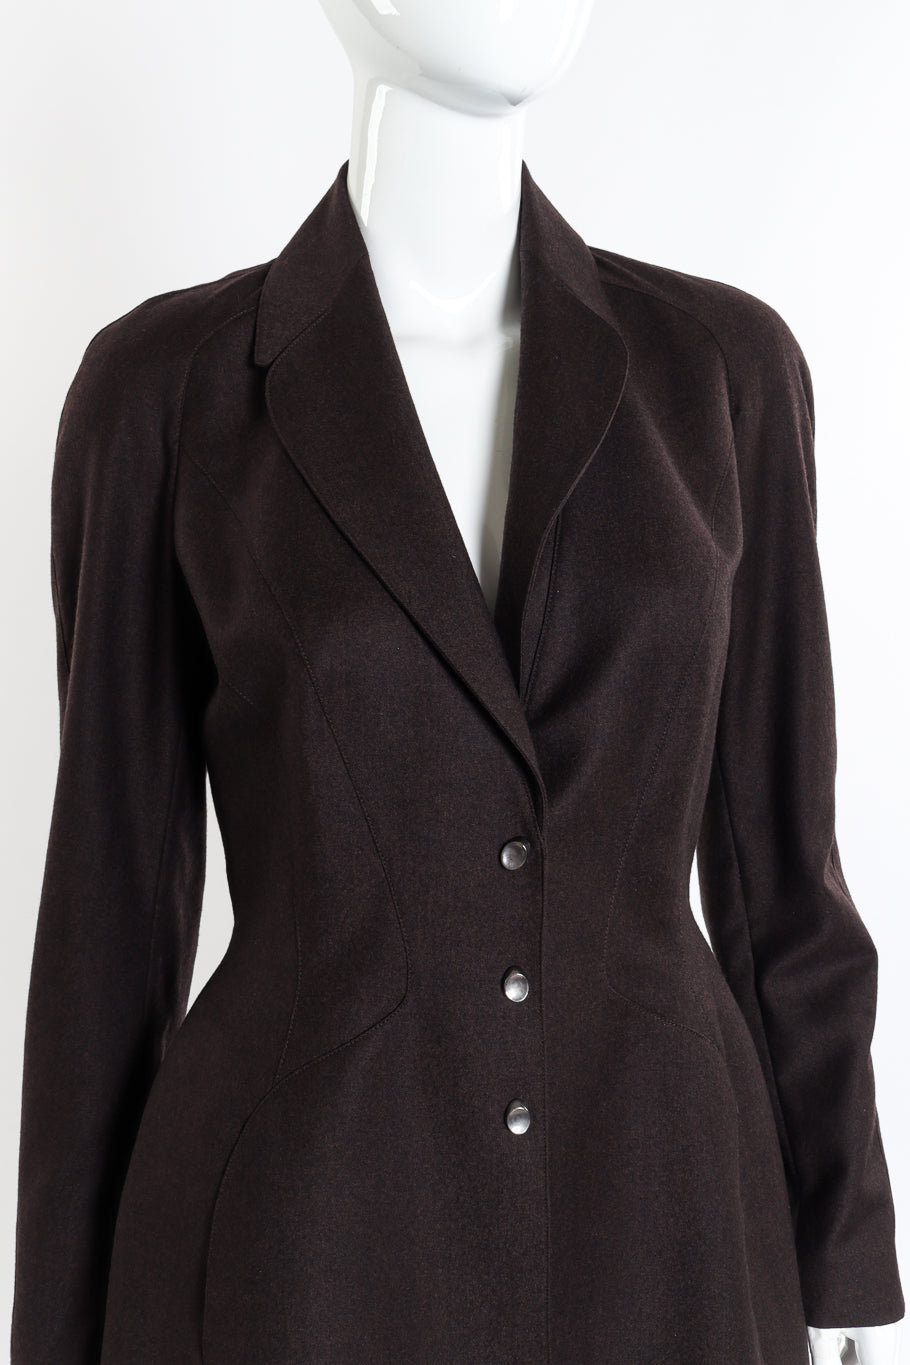 Vintage Thierry Mugler Sculpted Pantsuit jacket front on mannequin closeup @recessla